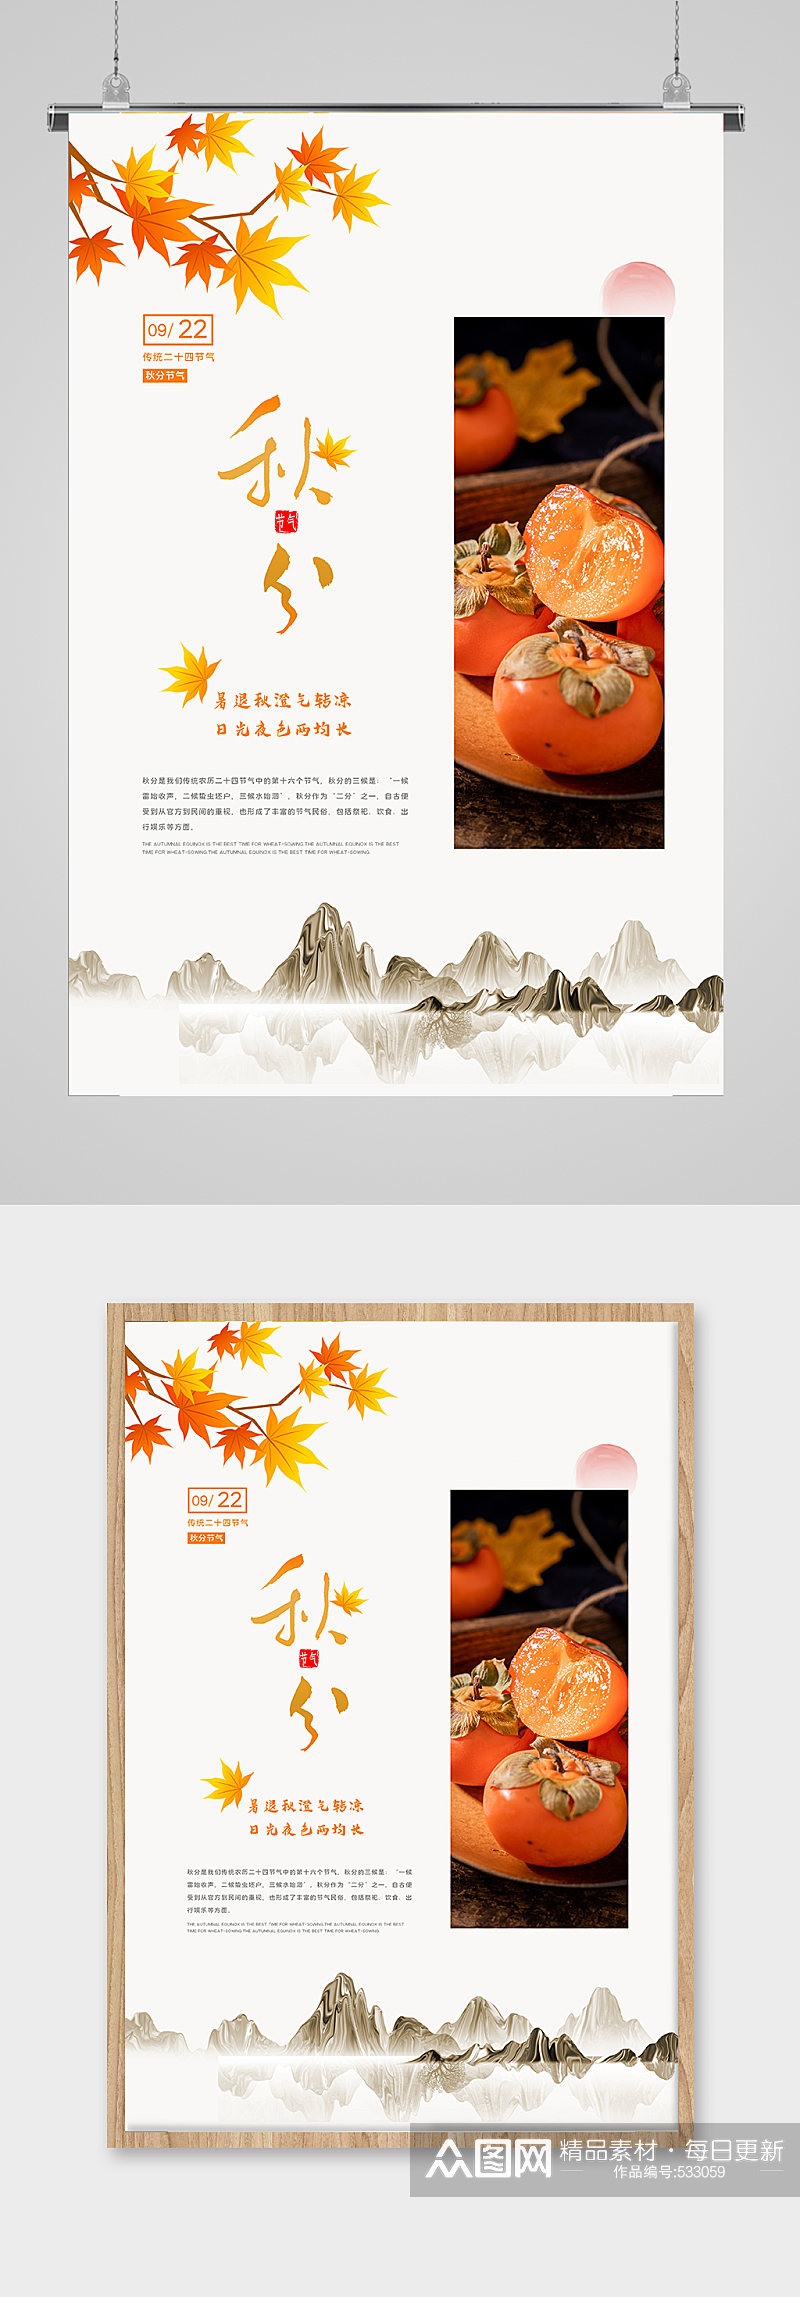 中国水墨传统节气秋分海报素材